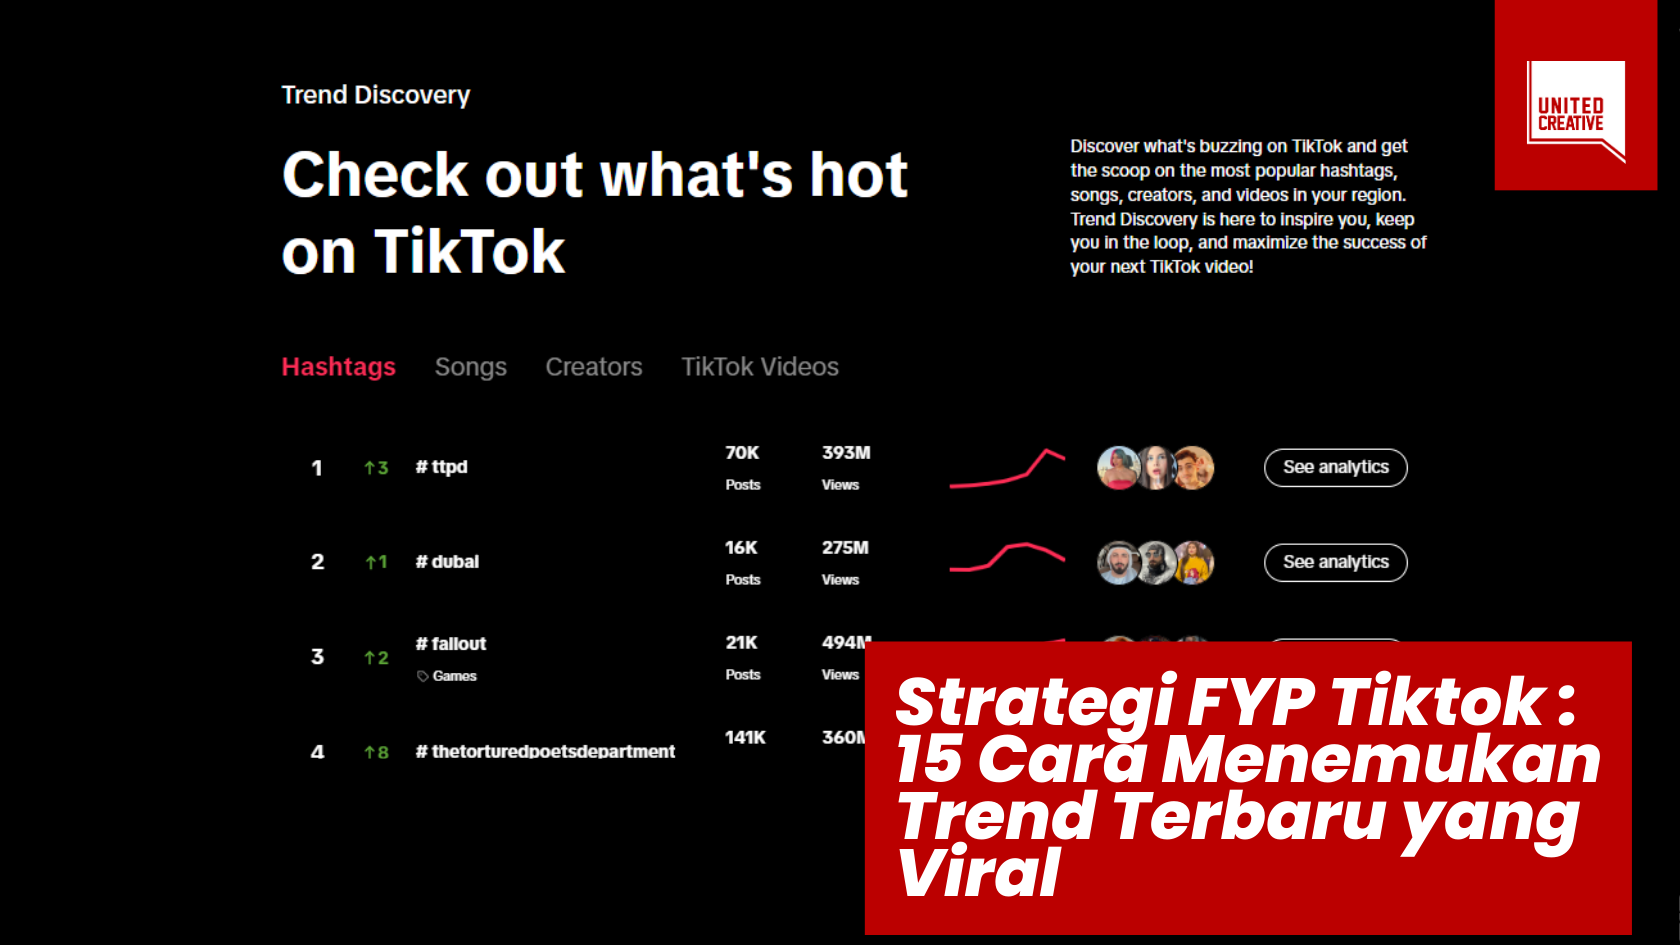 Strategi FYP Tiktok : 15 Cara Menemukan Trend Terbaru yang Viral image